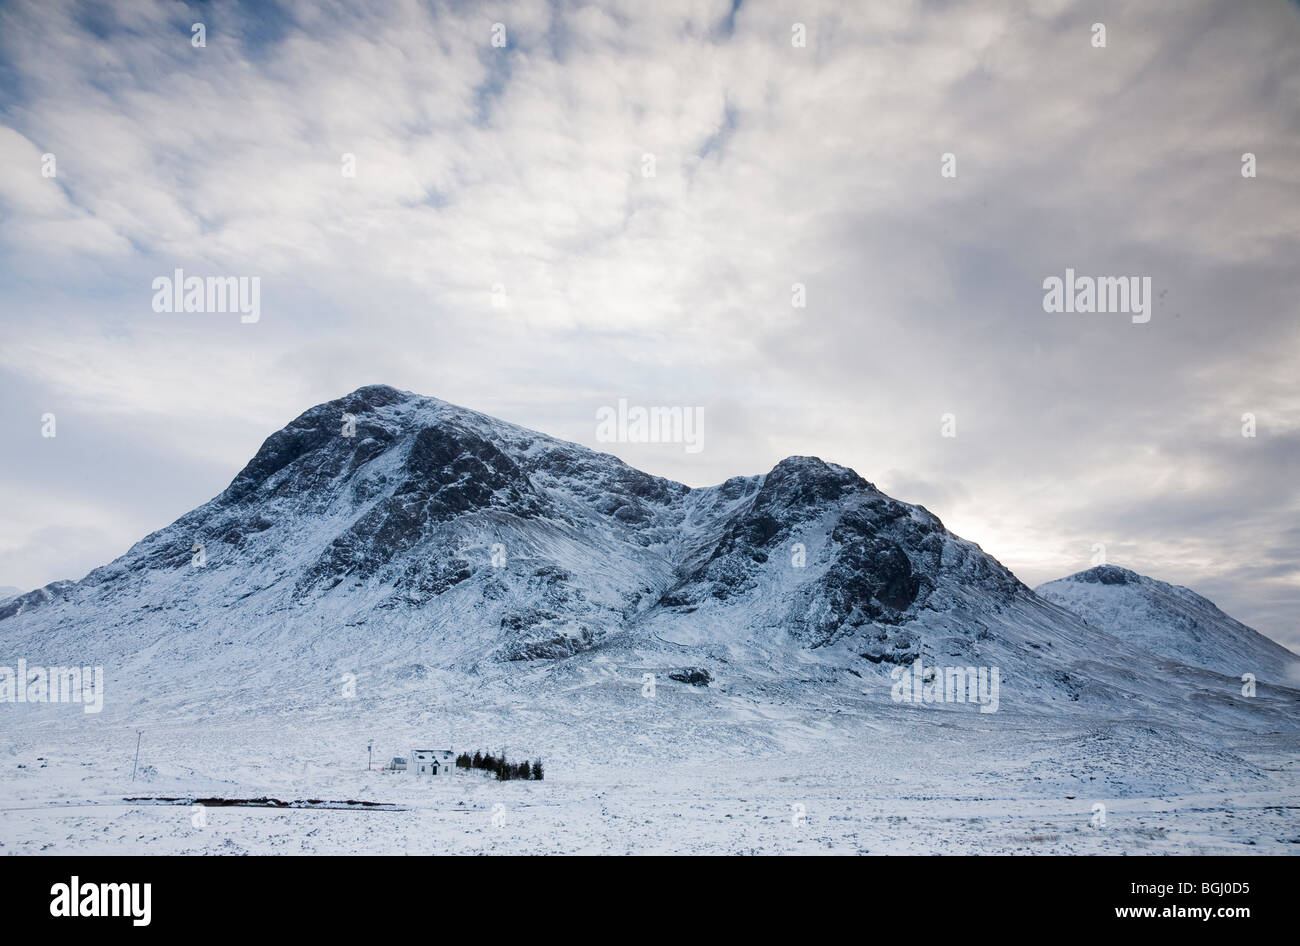 Remote House in Winter, Glen Coe, Scotland Stock Photo